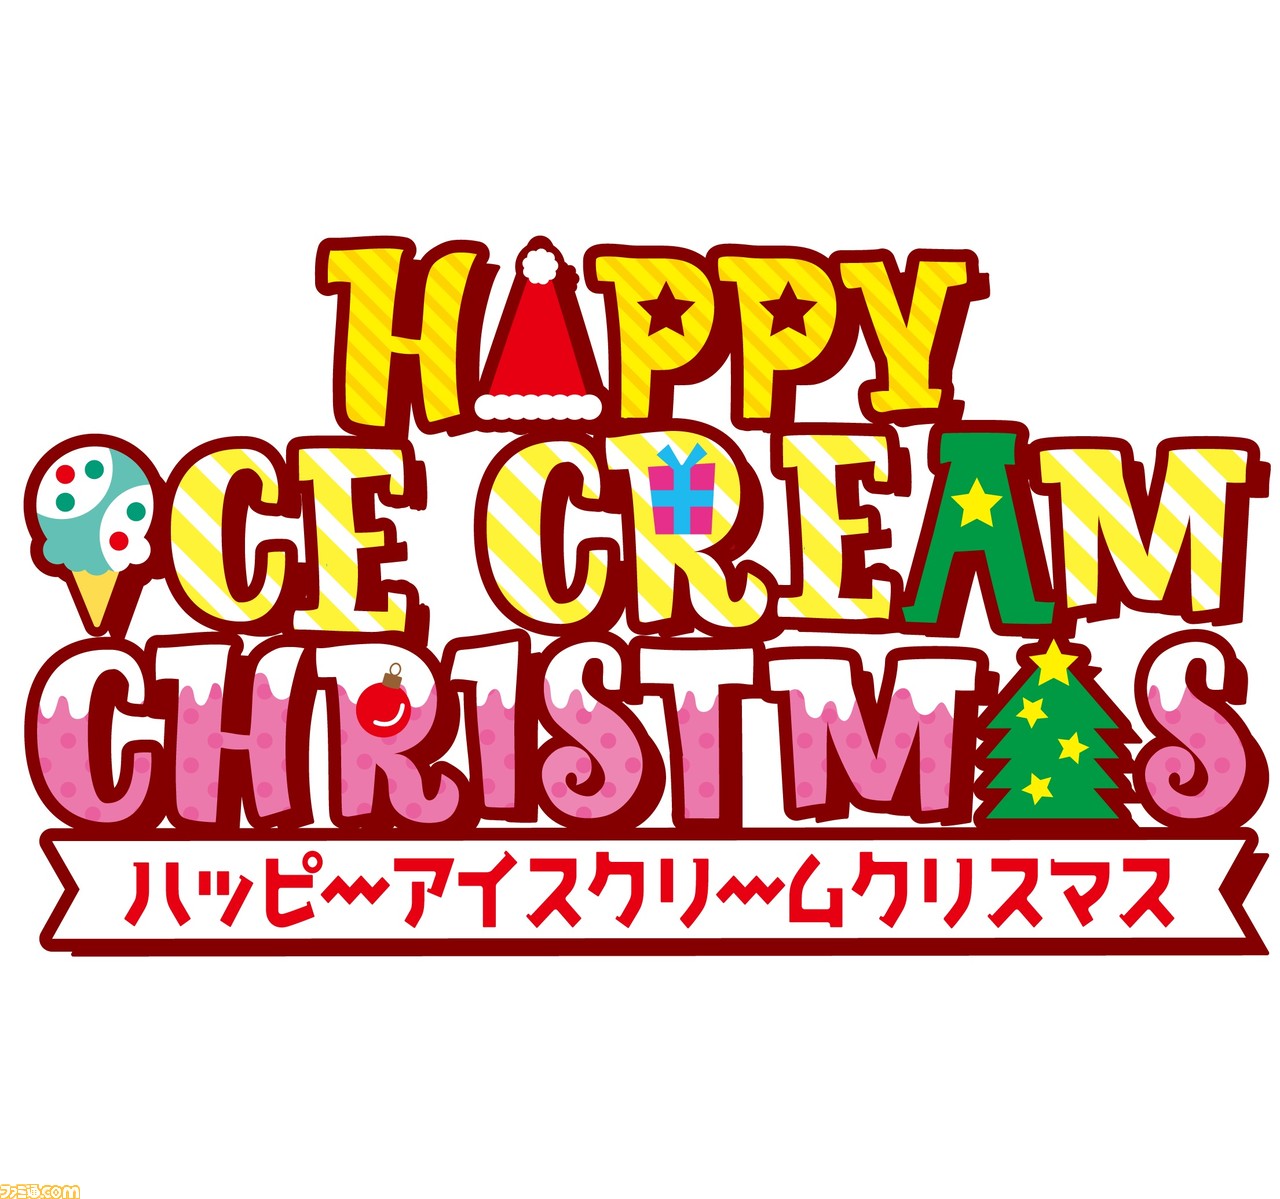 かわいい サーティワン ピカチュウやミニオンをイメージしたクリスマス仕様アイスの予約を11月1日より開始 ファミ通 Com